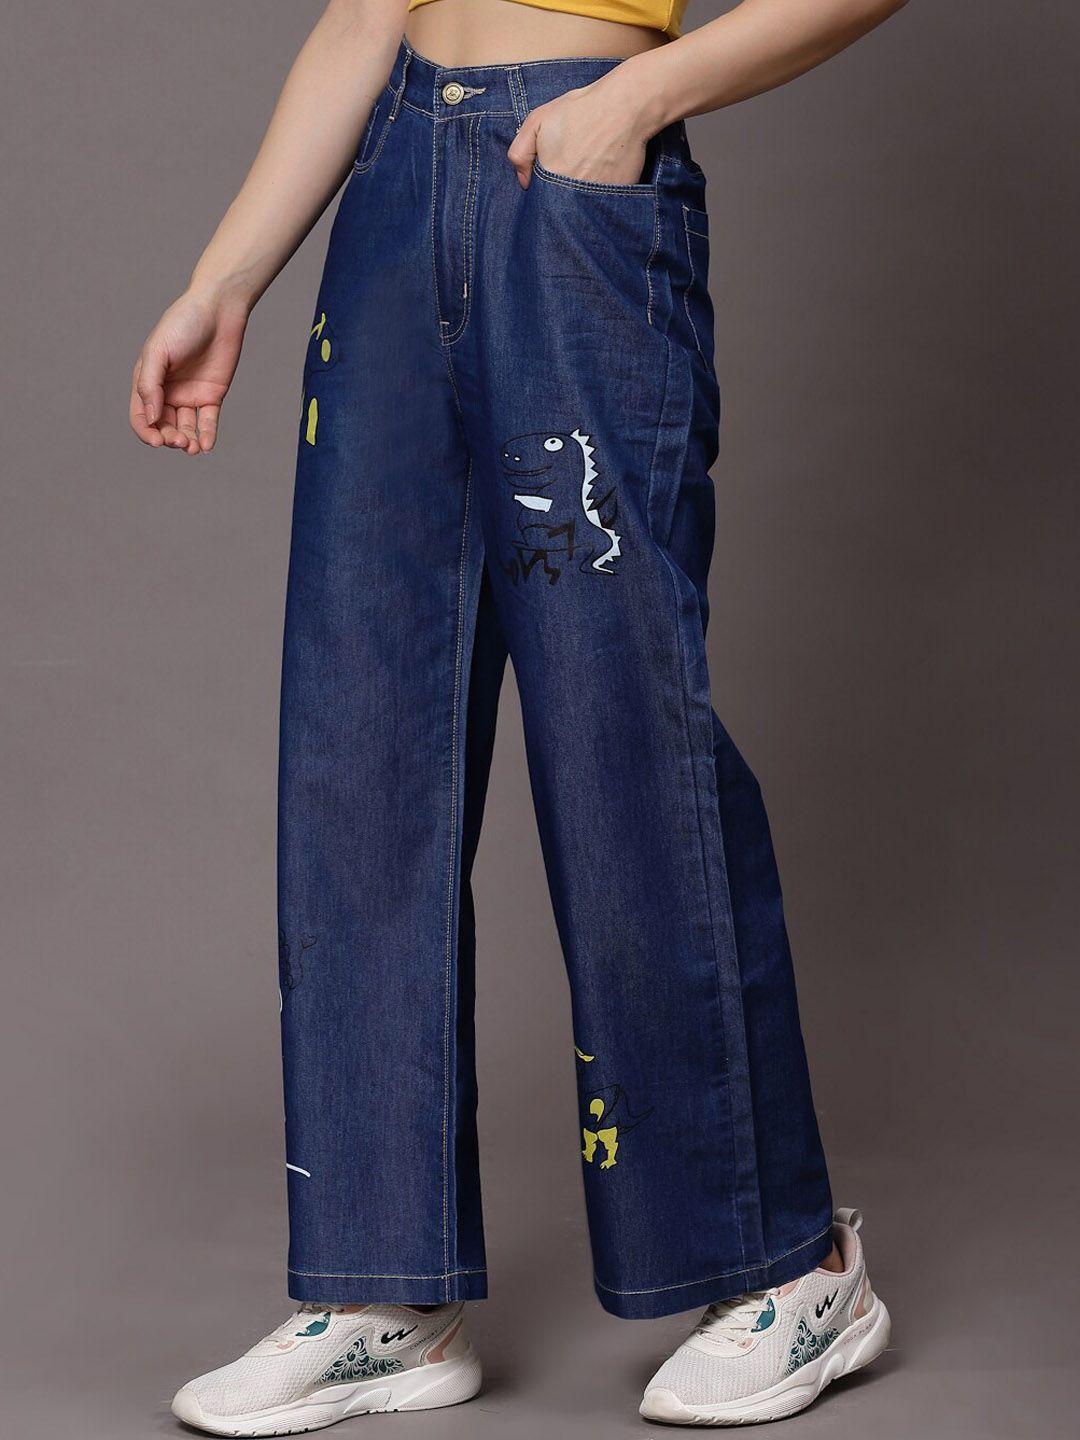 kassually women blue wide leg high-rise light fade jeans